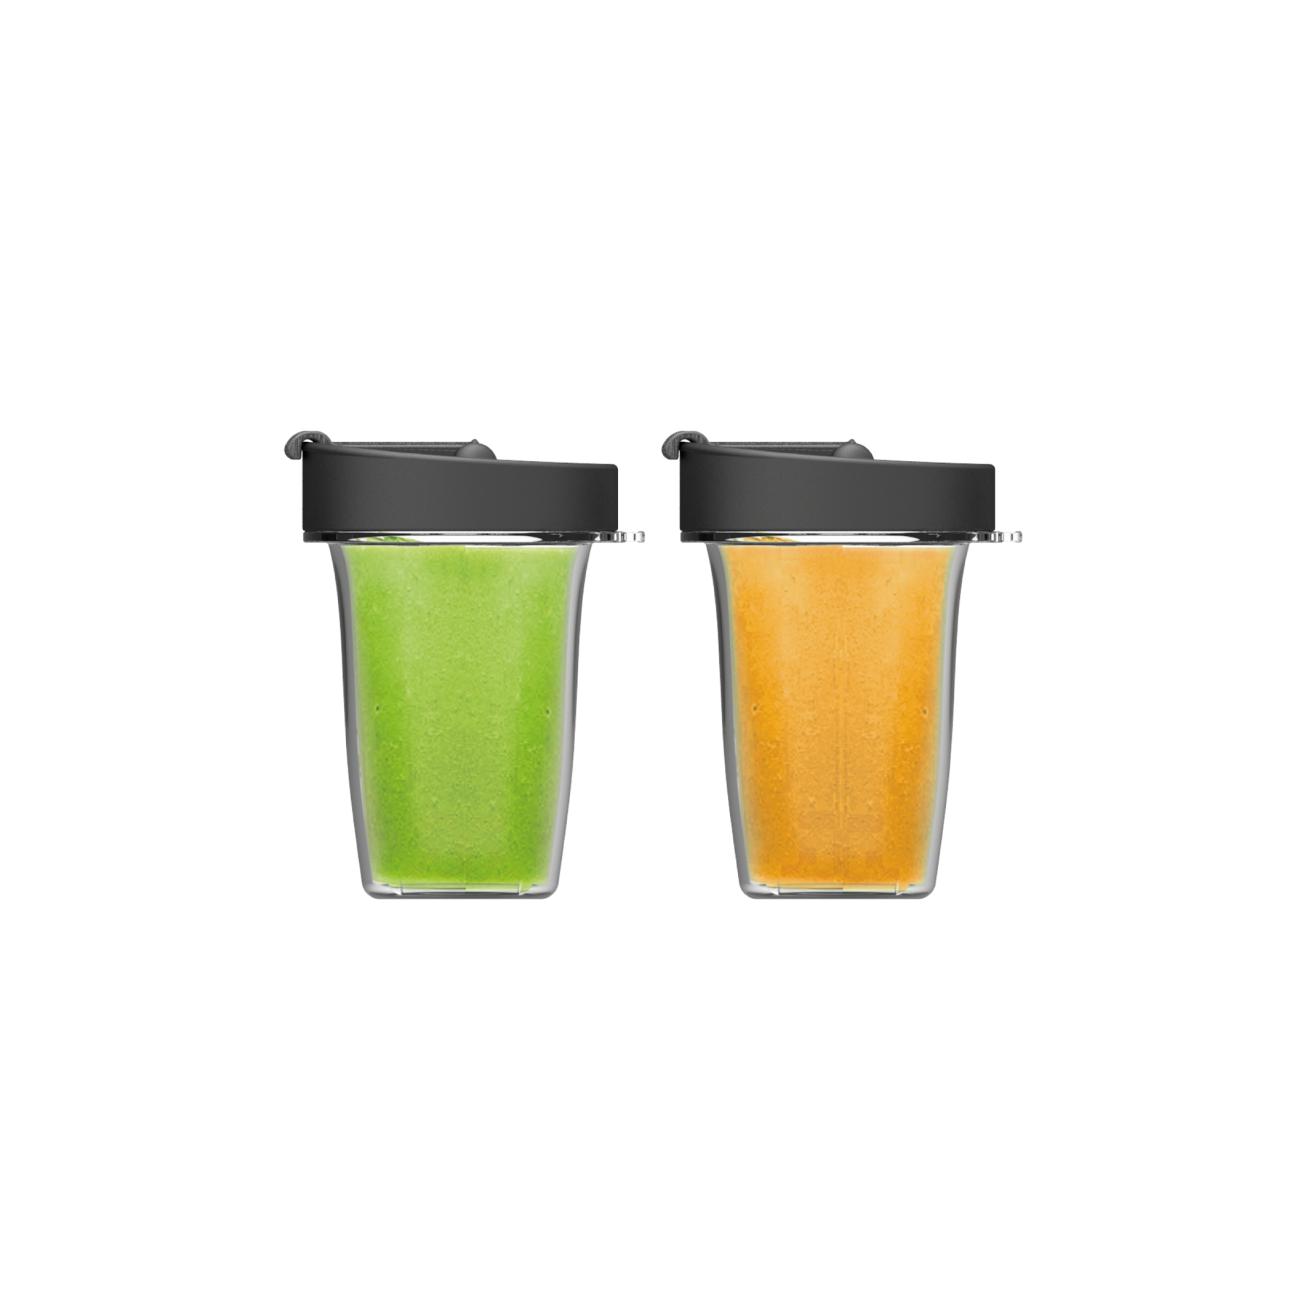 Juice Cups (400ml)